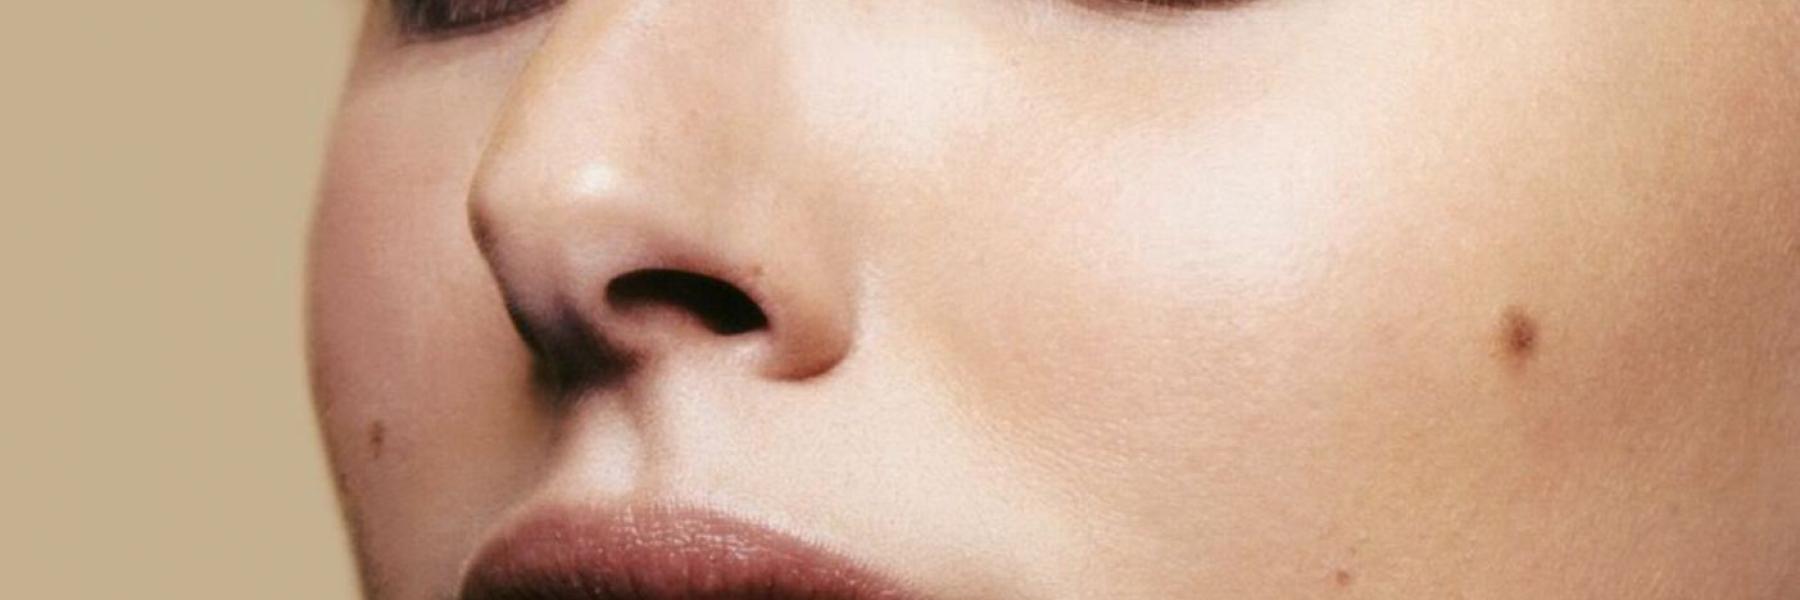 5 علاجات طبيعية فعالة لإزالة شامة الوجه.. تعرف عليها (صور)